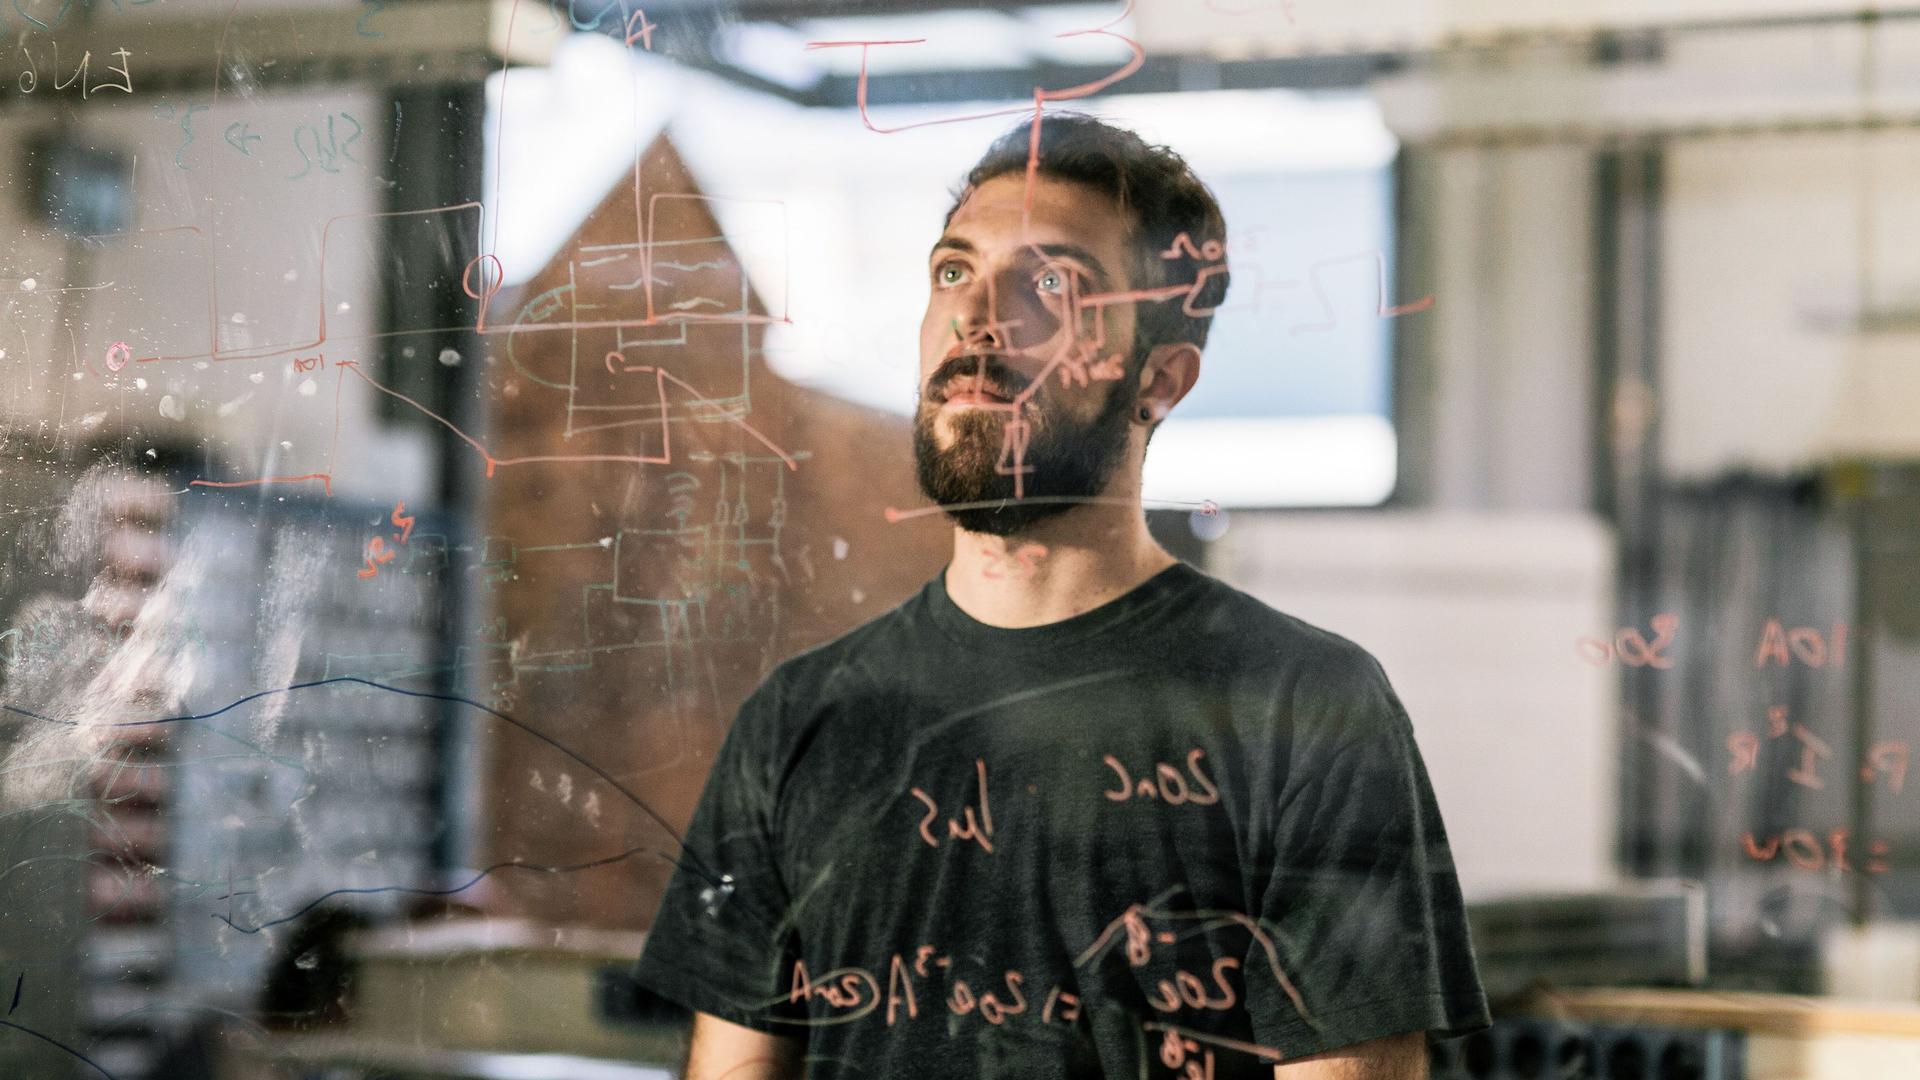 Junger Mann schaut konzentriert auf einen auf Glas gezeichneten elektronischen Schaltplan.